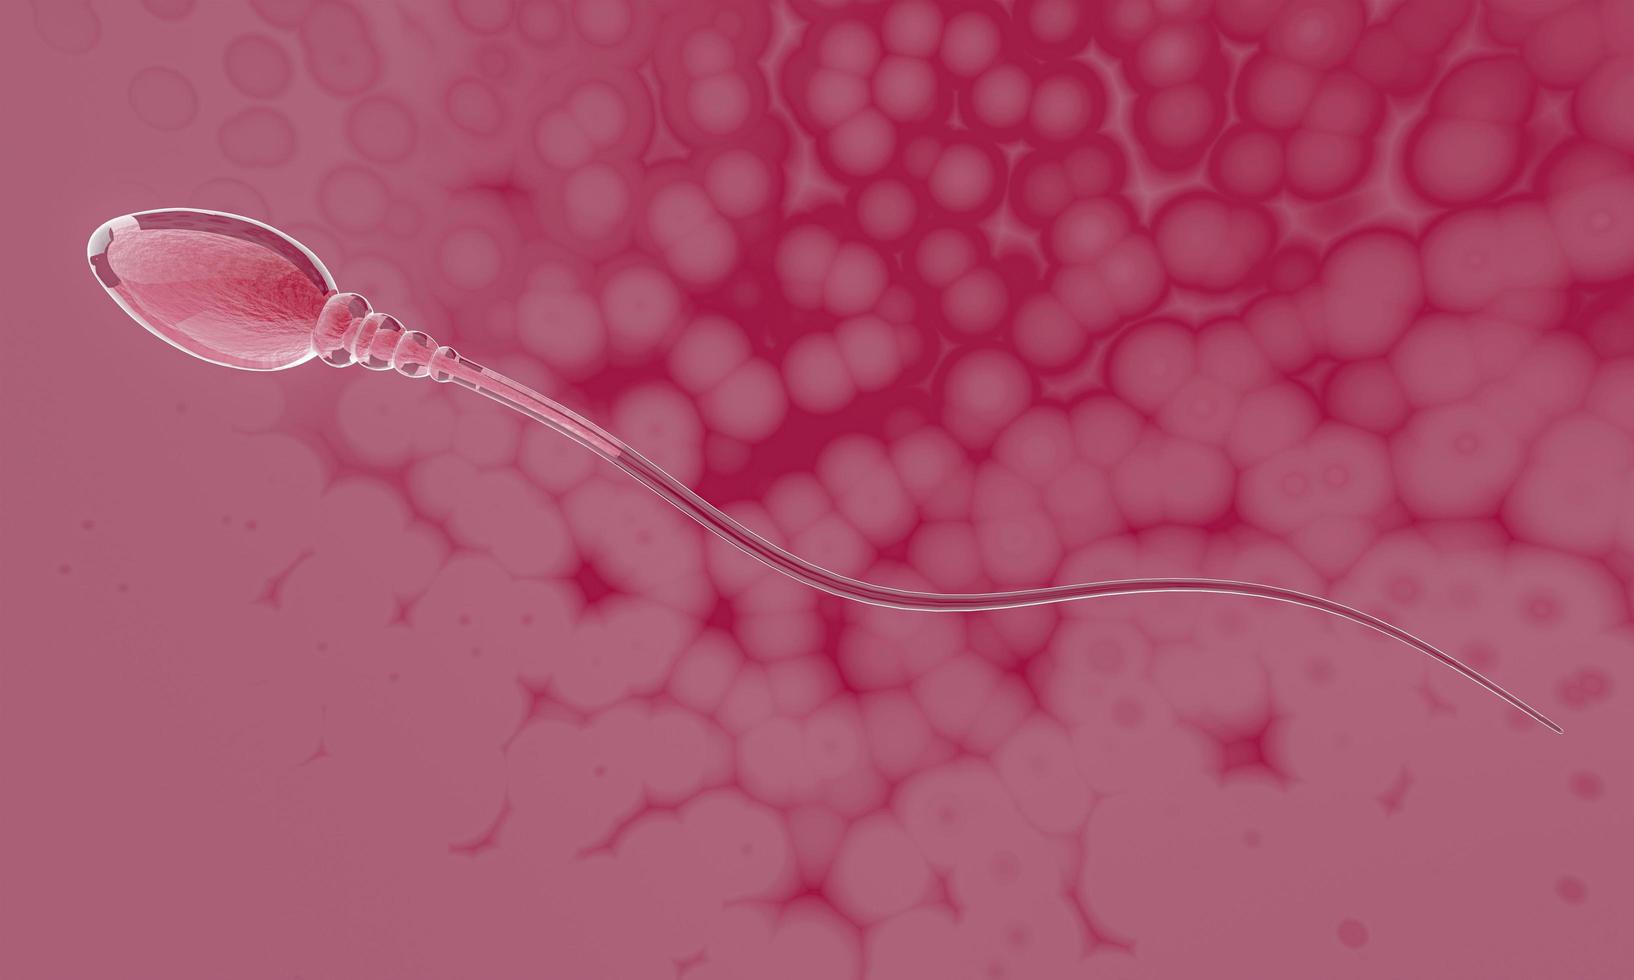 da vicino simula lo sperma per la riproduzione umana la sua testa è snella, ovale e ha una lunga coda, pelle chiara, nucleo visibile. rendering 3D foto